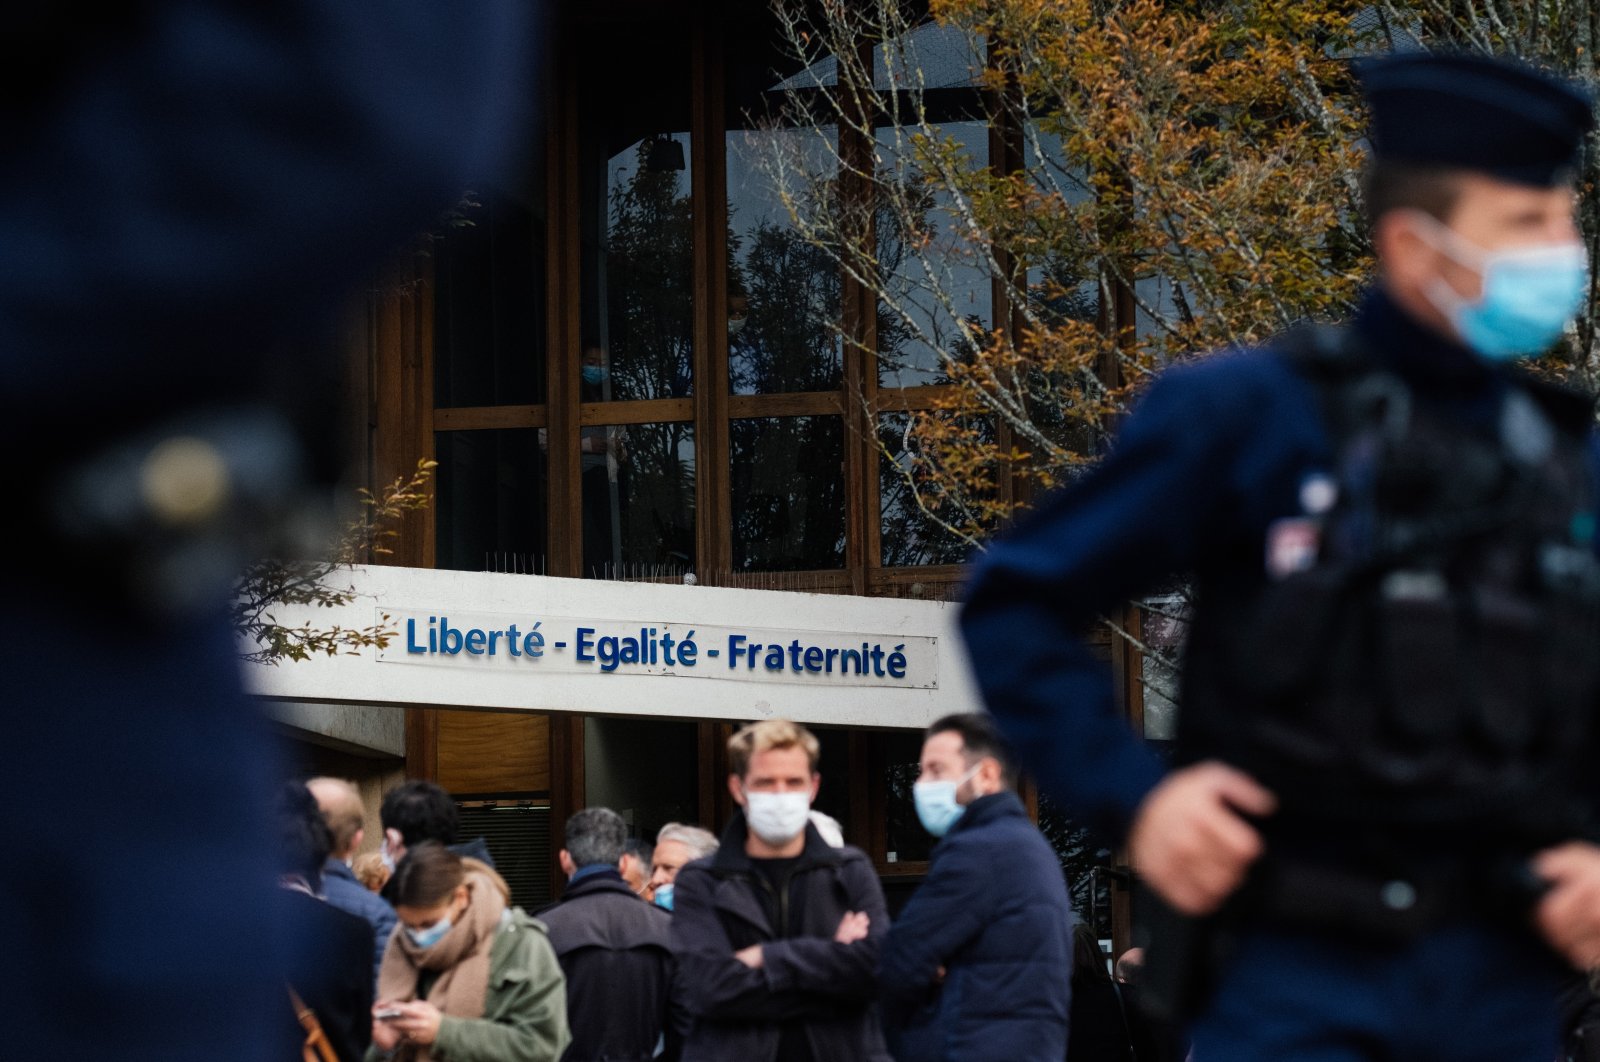 Prancis mungkin menyebarkan Islamofobia di pucuk pimpinan UE: Para ahli